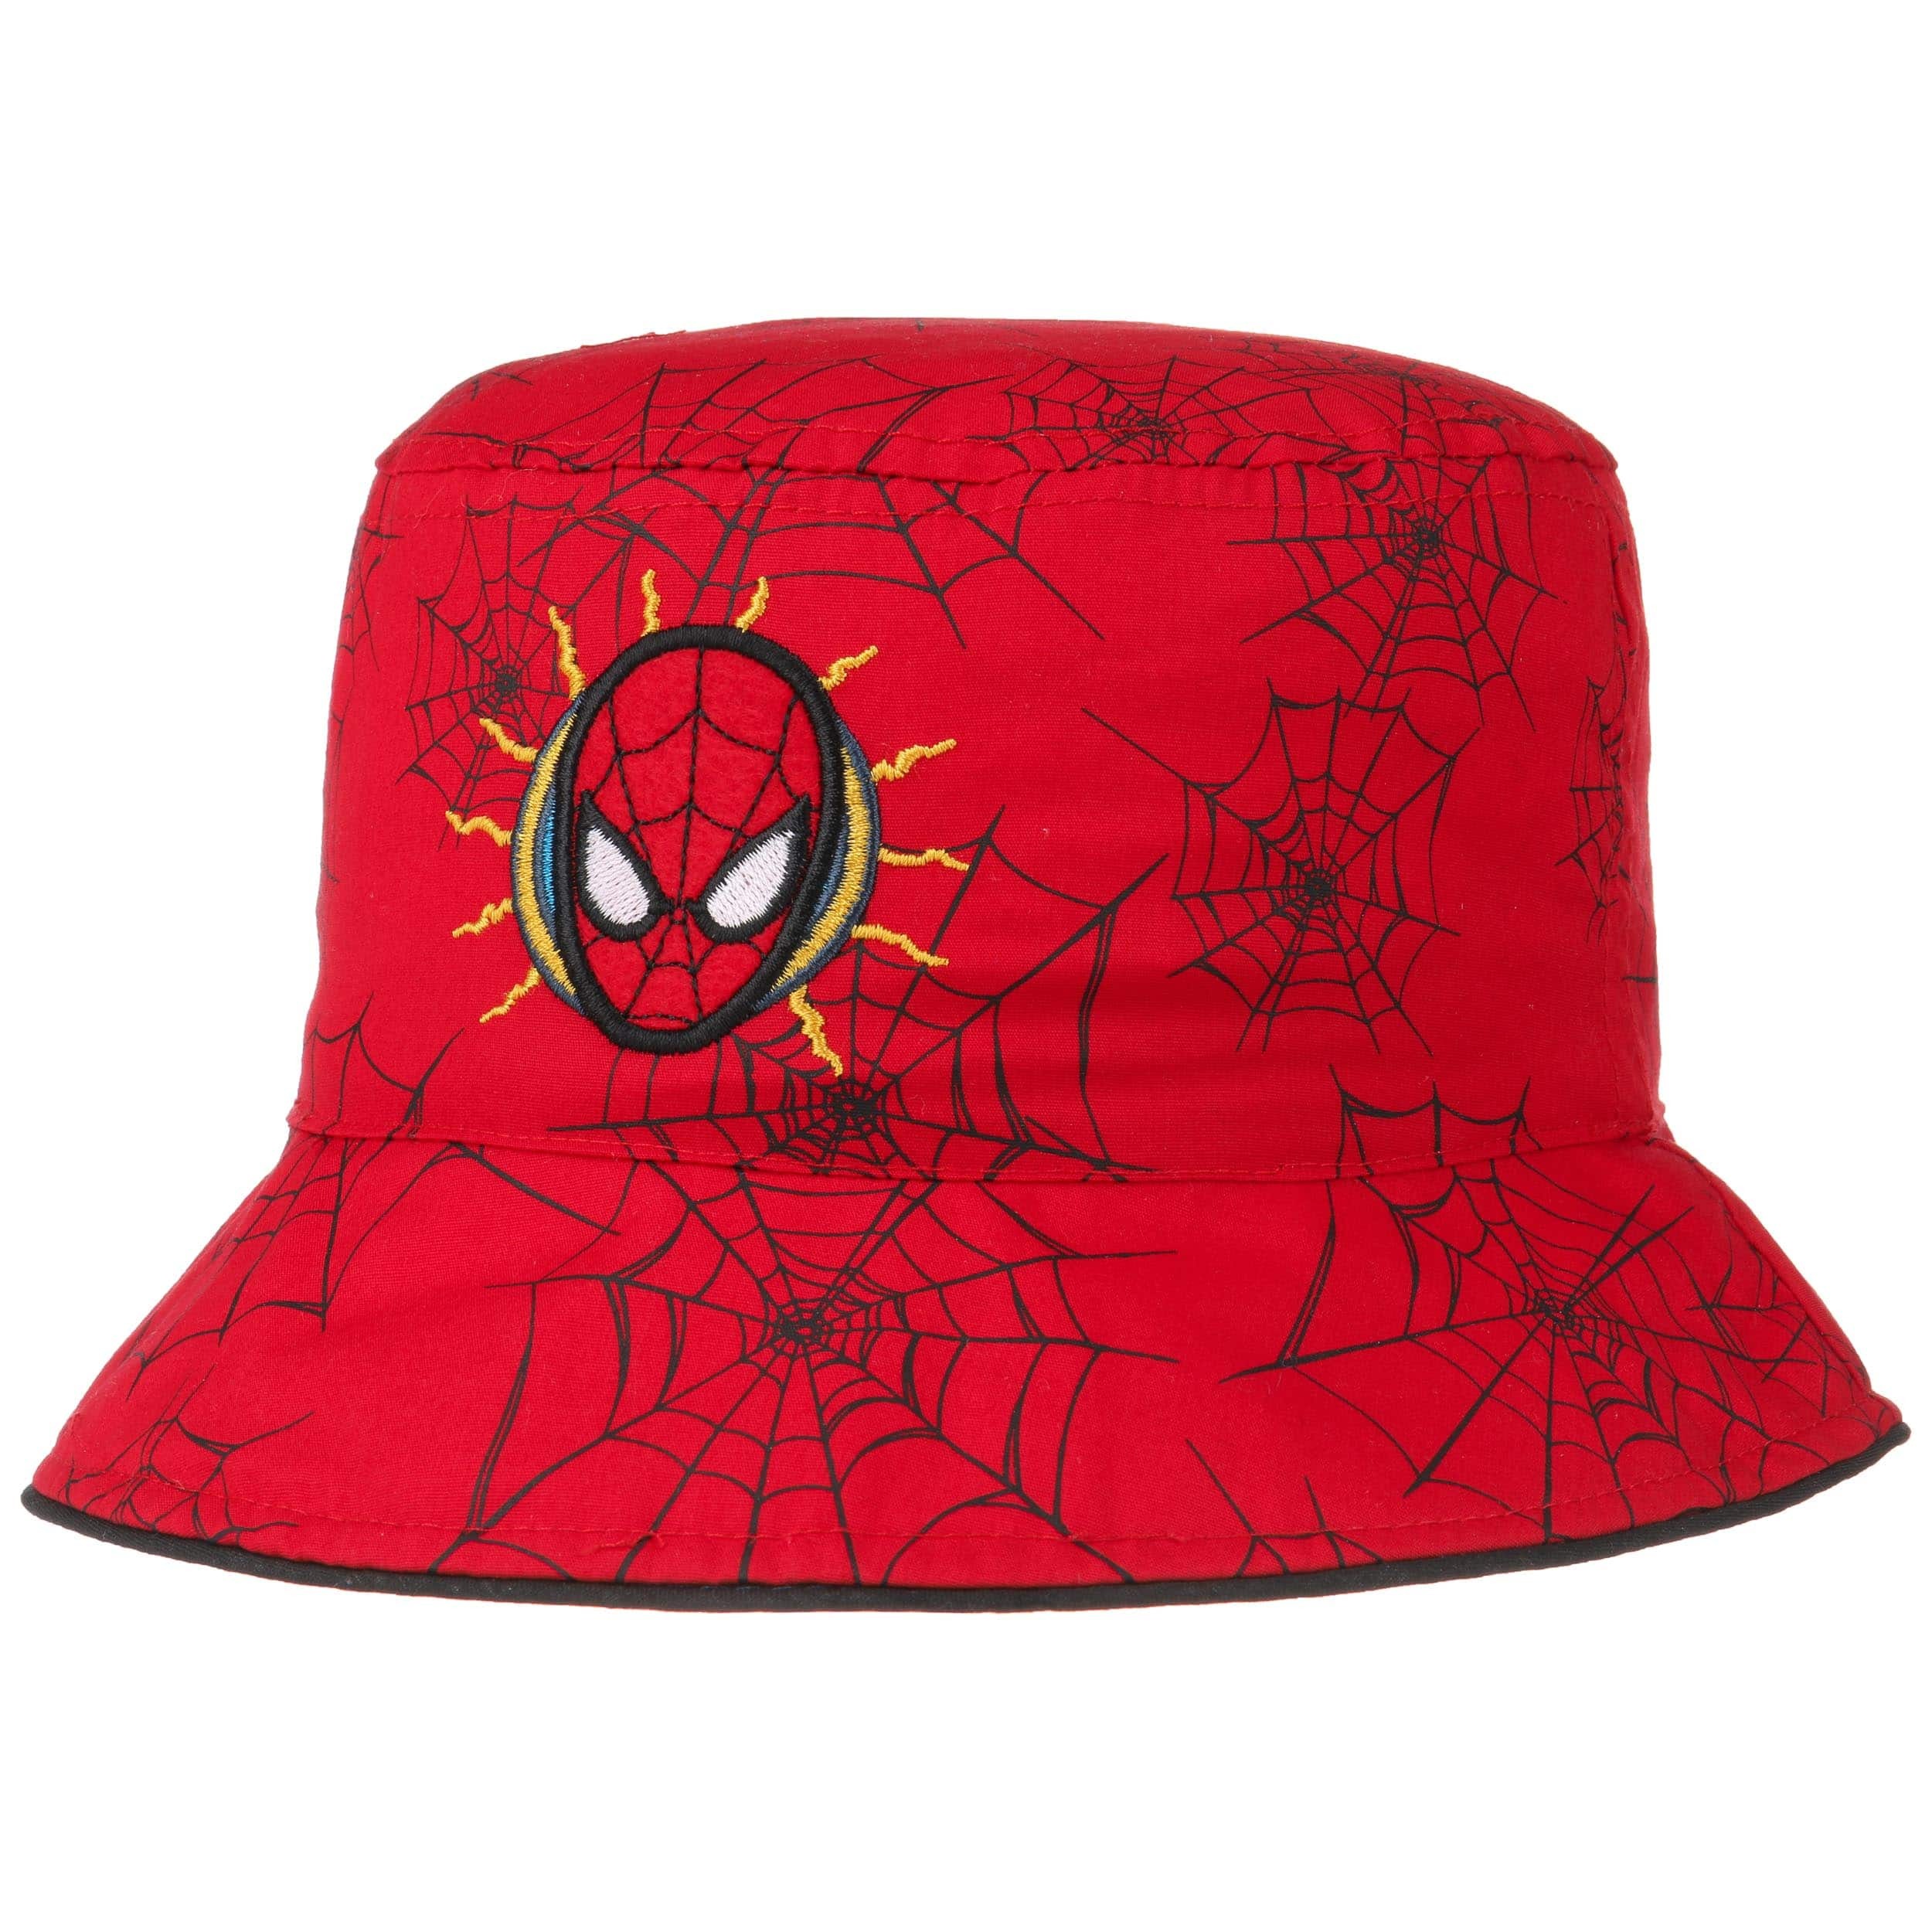 Details about   100% cotton summer sun cap childrens SPIDERMAN SPIDEY SUPER HERO kids hat hats B